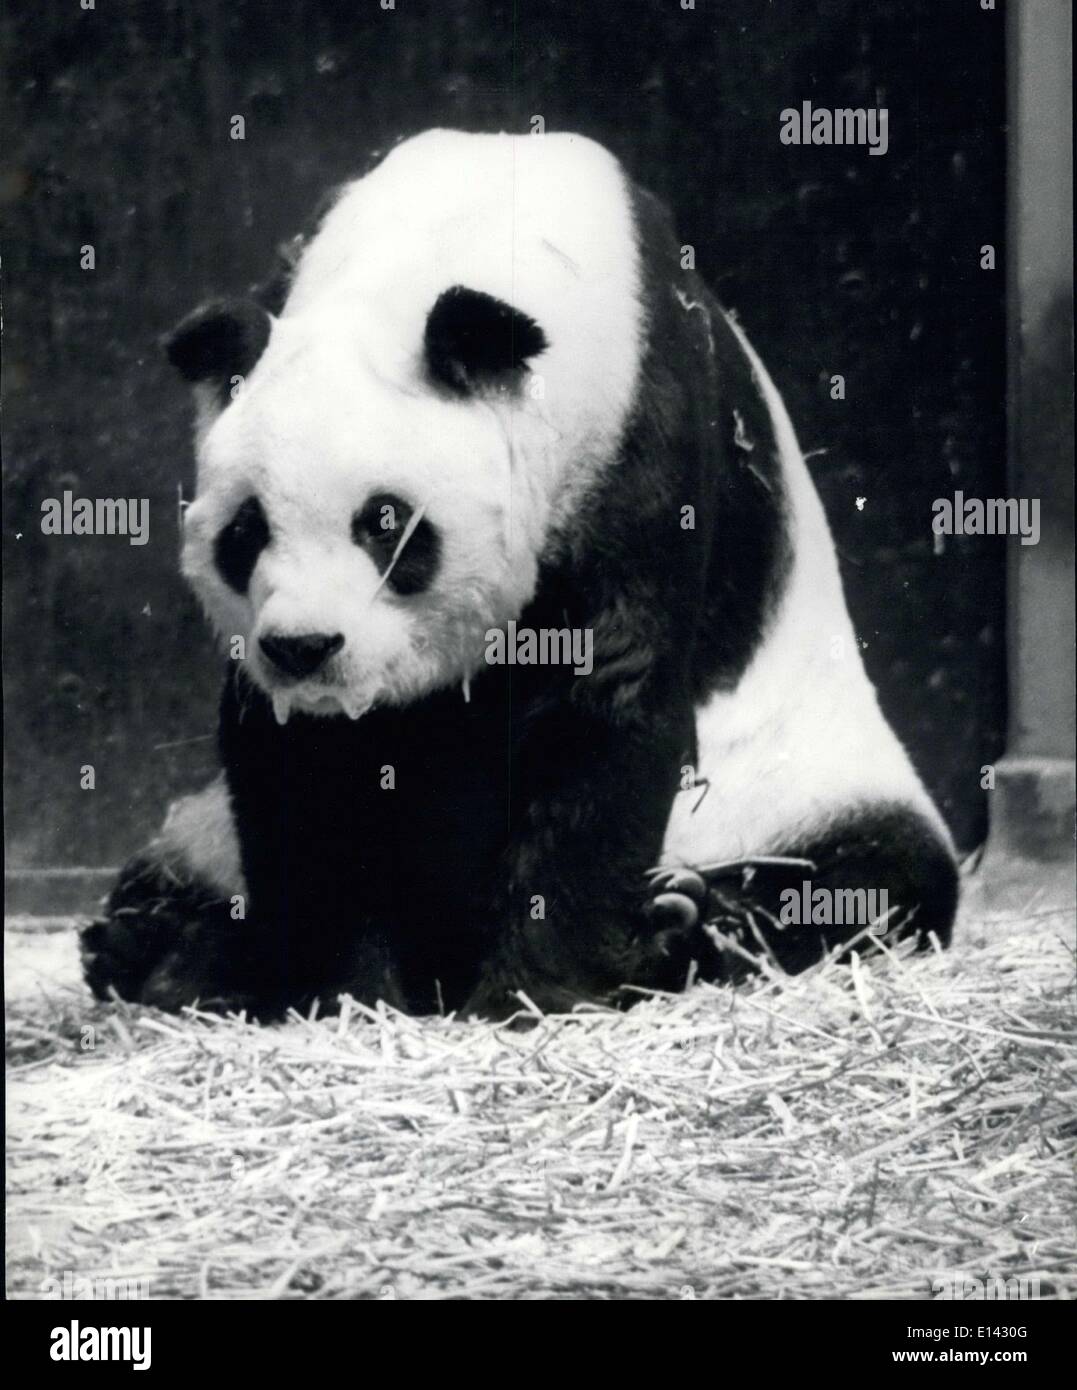 31 mars 2012 - Chichi tient toujours la vedette : la première dame du monde animal, le panda géant, Chi-chi est confrontée à son dernier rideau à l'âge de 15 ans. L'ancien trouper at Regents Park Zoo se meurt sans enfants et le public britannique montrent leur vrai amour pour elle. Elle ne laissent souvent la tranquillité de sa grotte au zoo et les représentations en matinée qu'elle n'ont été si généreux ont dû être annulés. Chichi est arrivé de la forêts de bambous de Chine en 1958 et a été sans succès d'une mise en relation avec la Fédération de Panda An-An en 1968 Banque D'Images